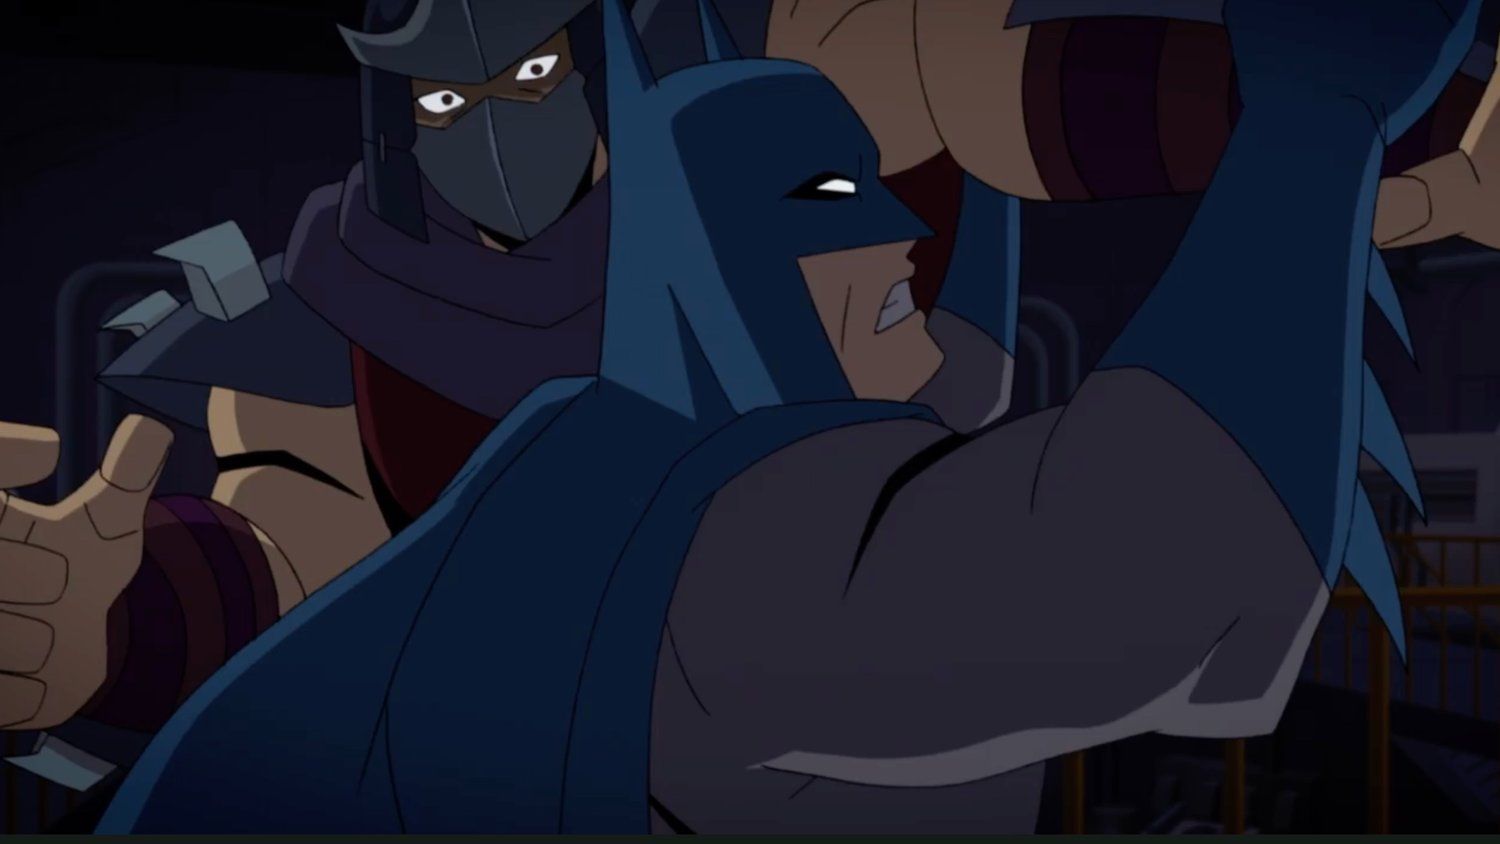 Batman Fights Shredder in DC's First BATMAN VS. TEENAGE MUTANT NINJA TURTLES